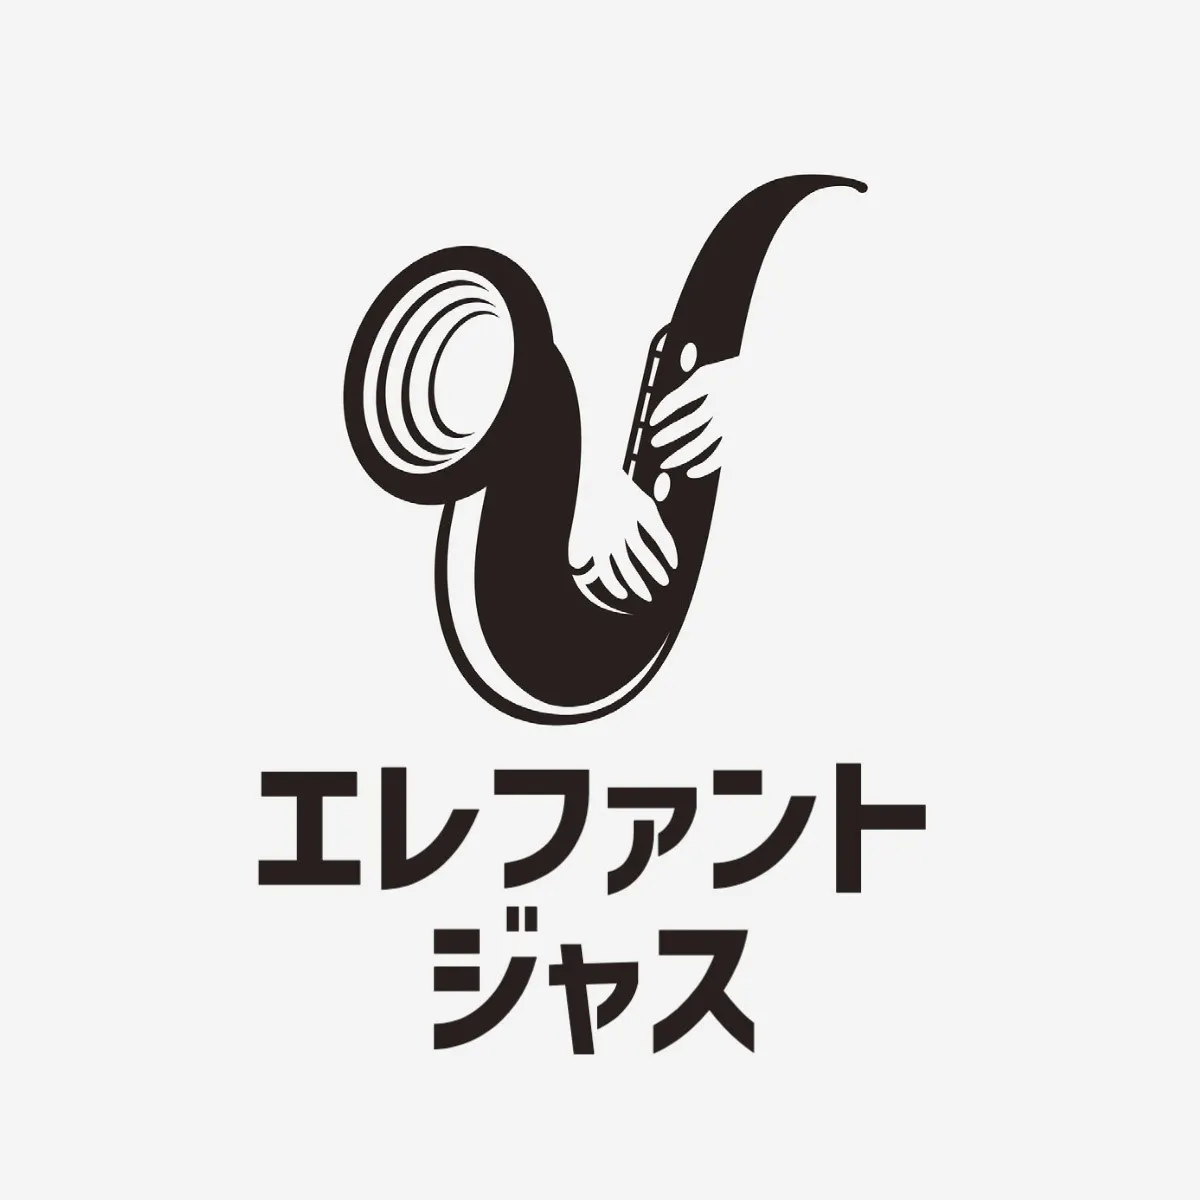 Elephant Jazz Band logo